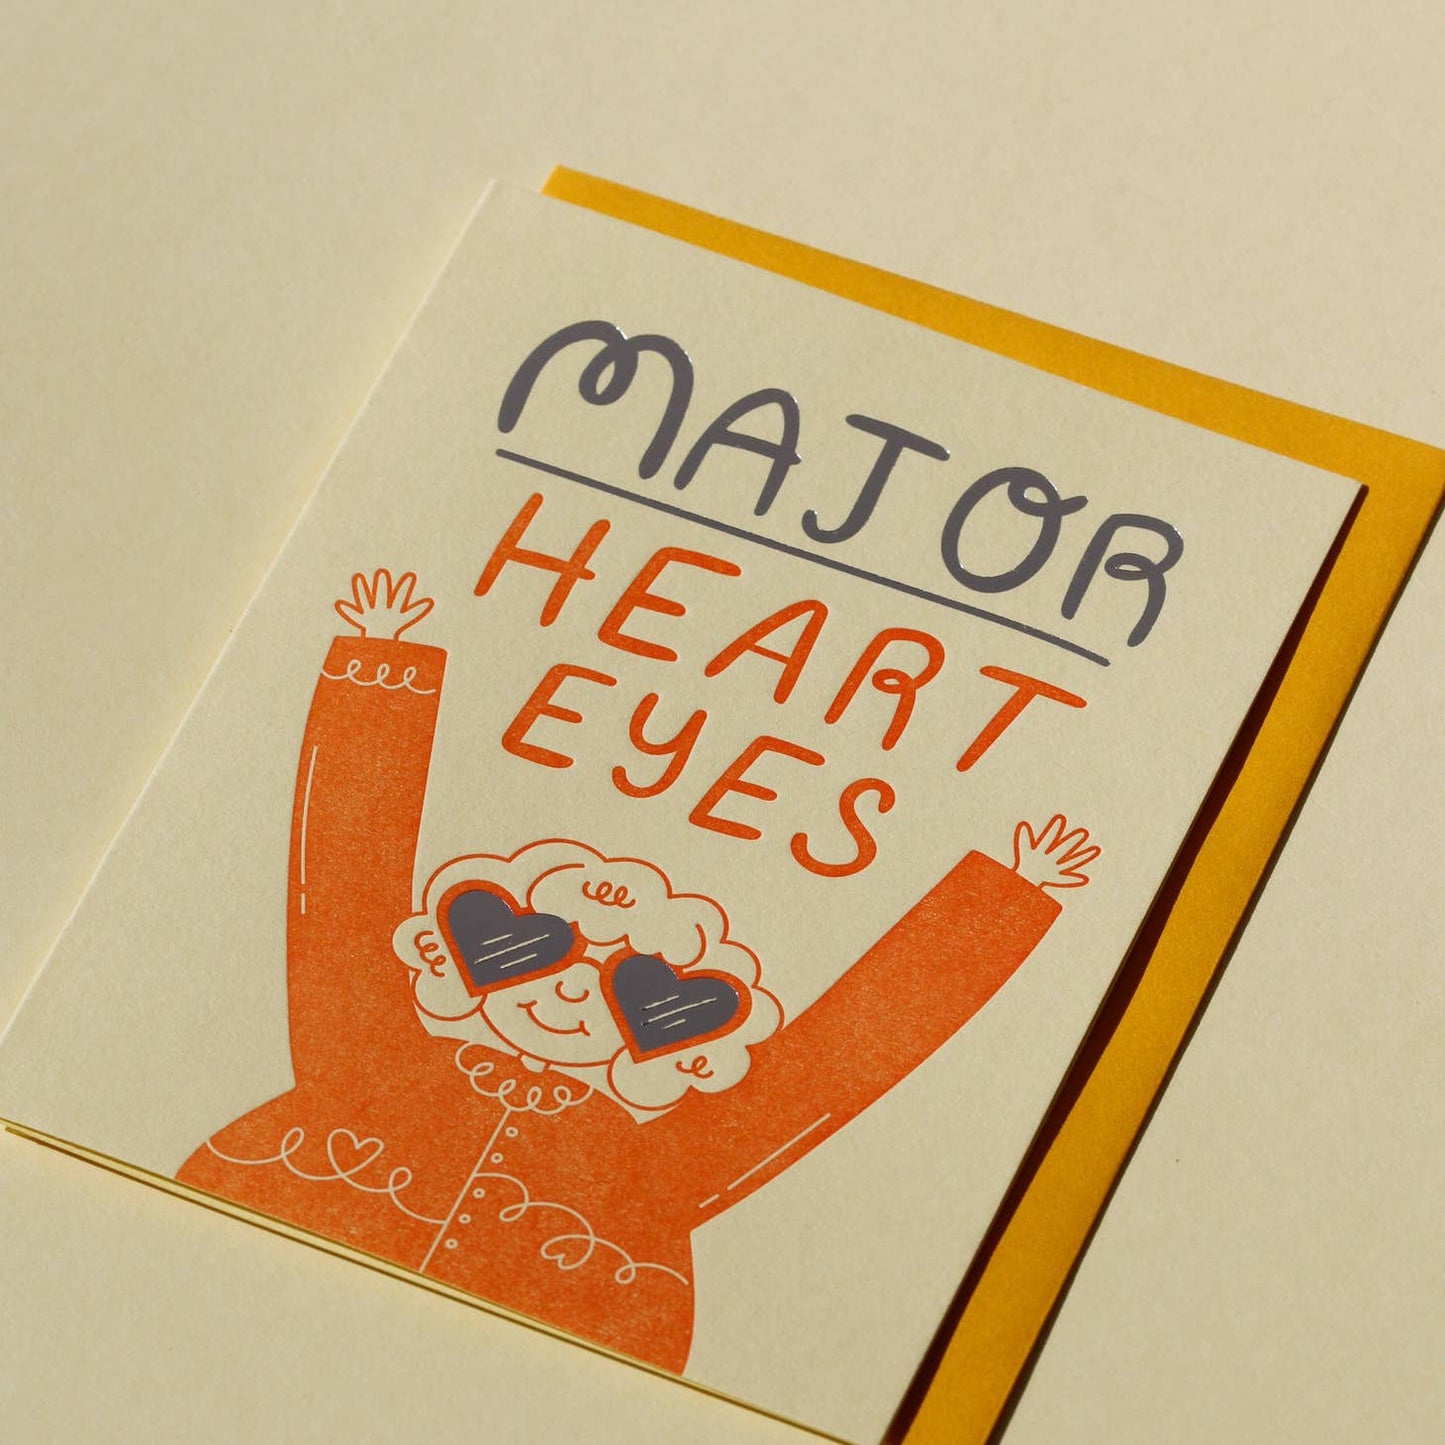 Major Heart Eyes Card